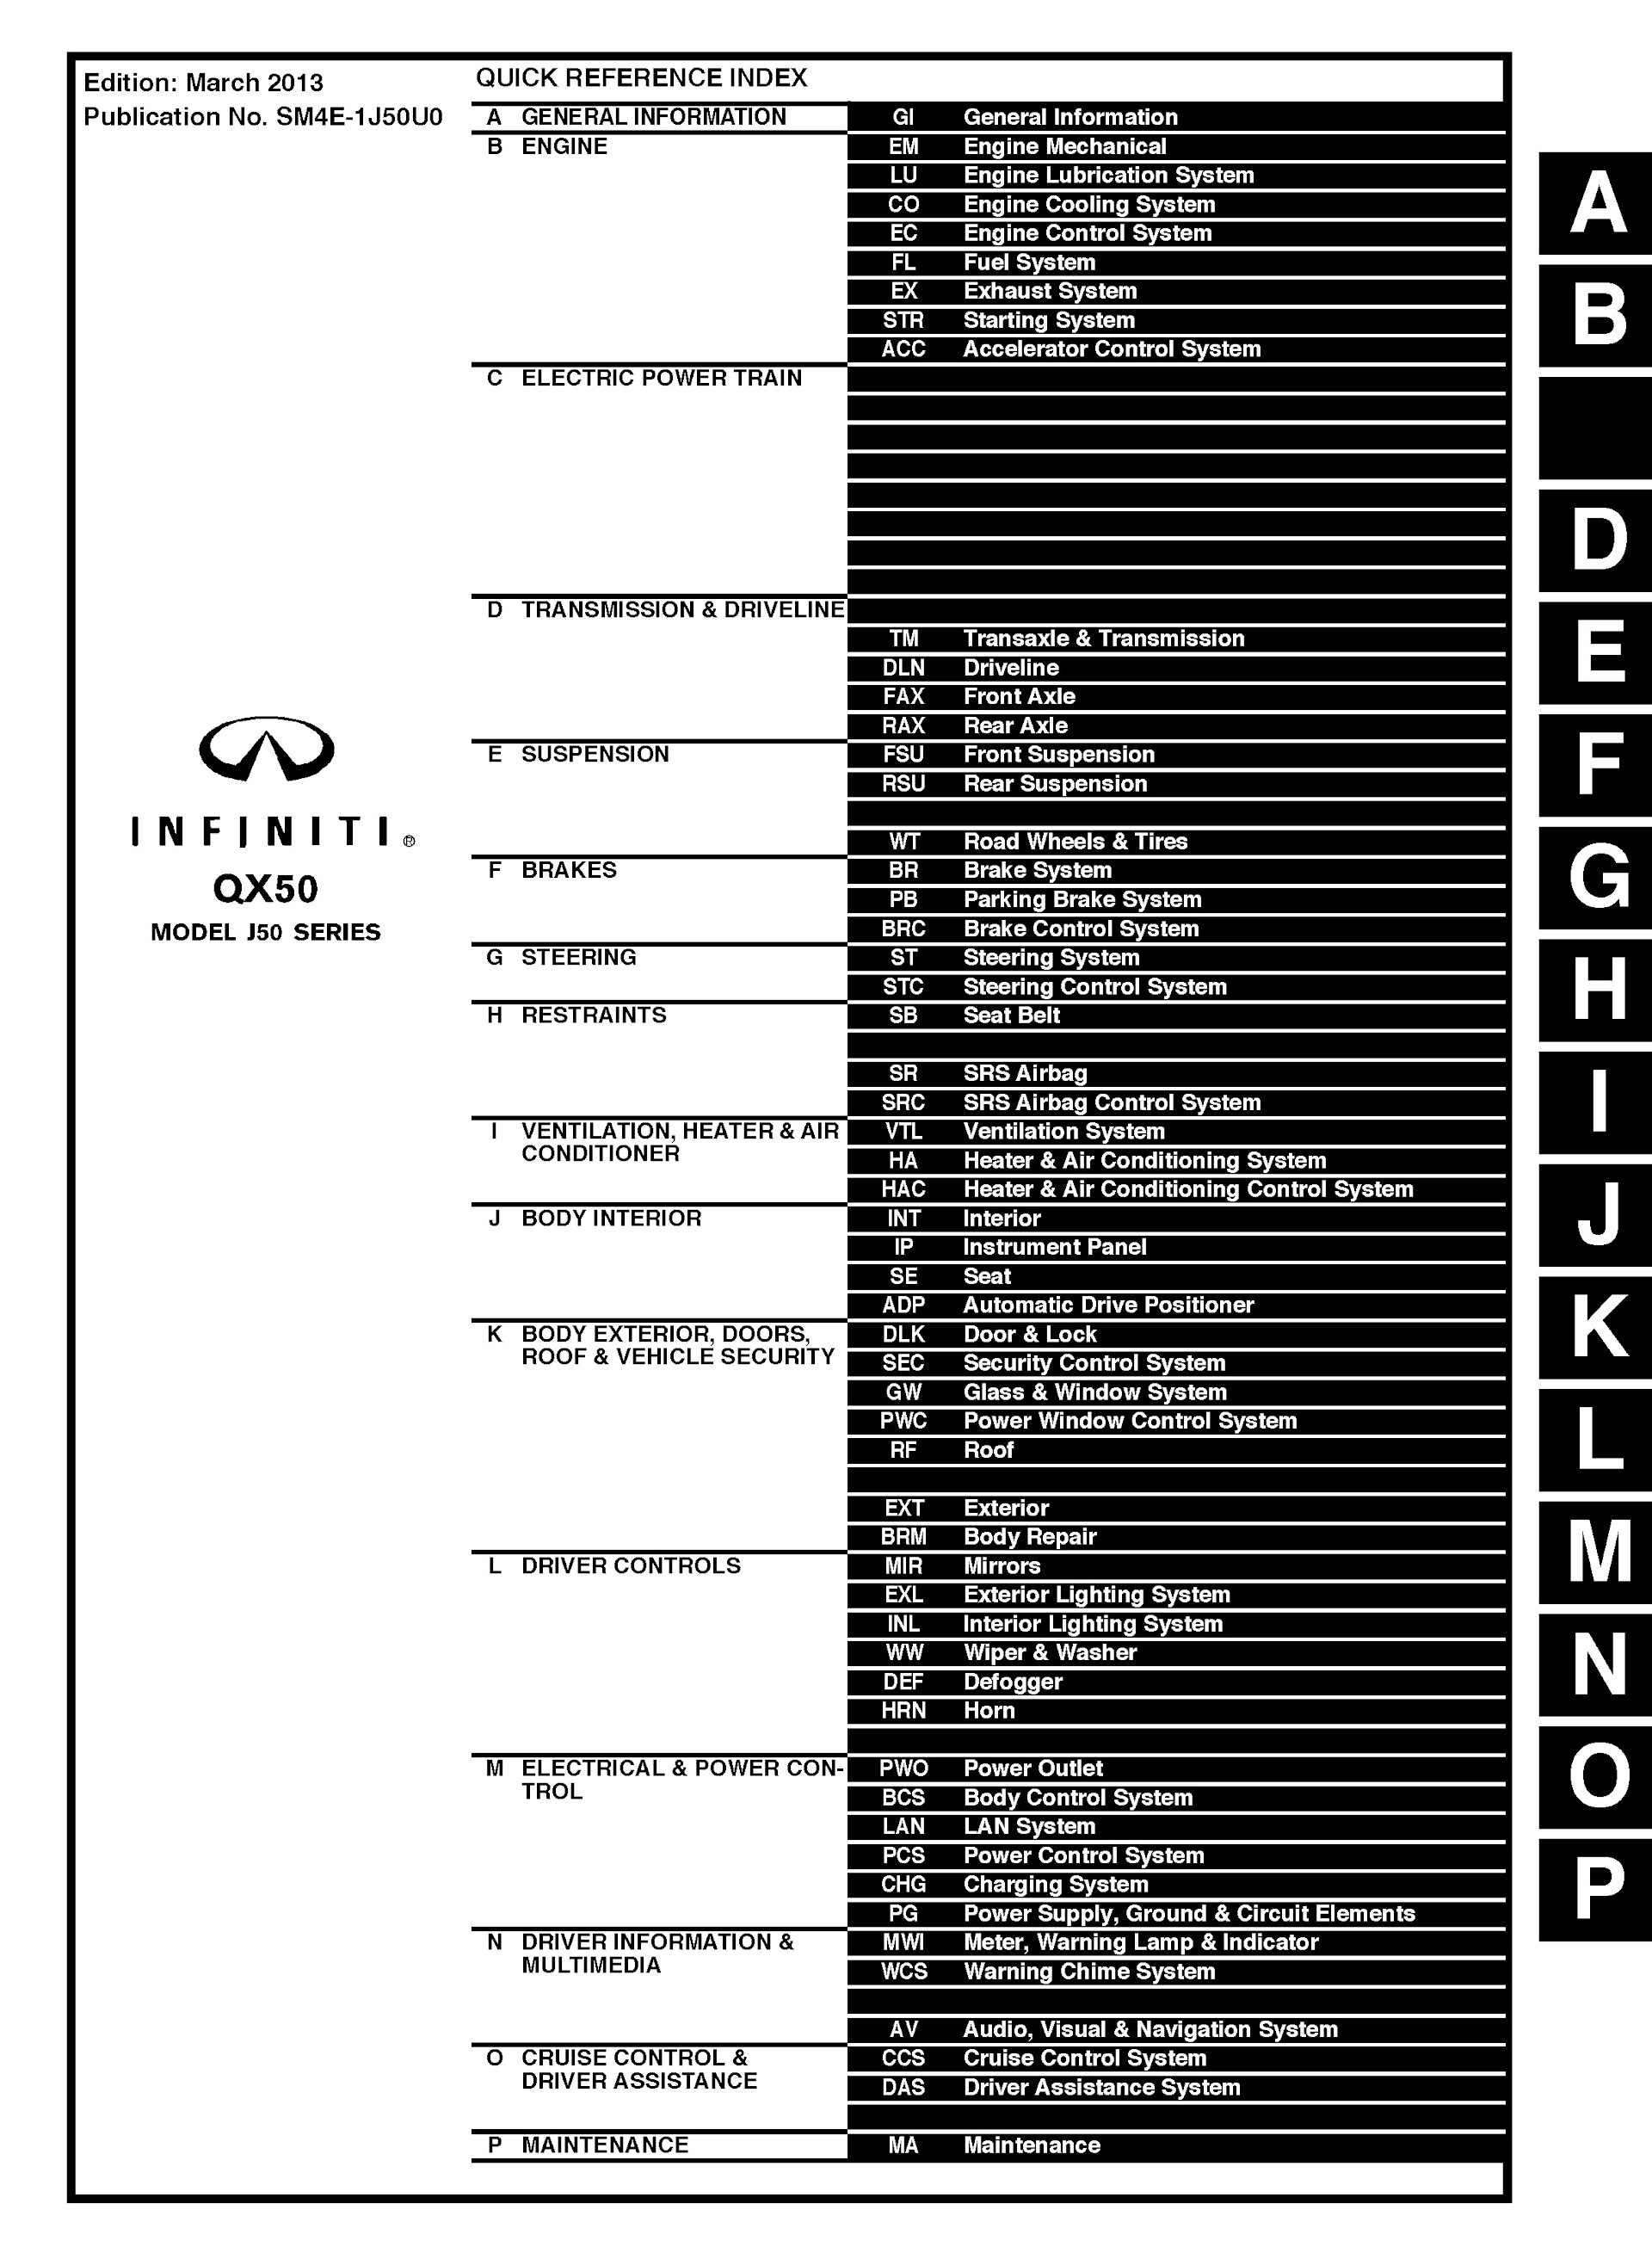 Table of Contents 2014 Infiniti QX50 Repair Manual